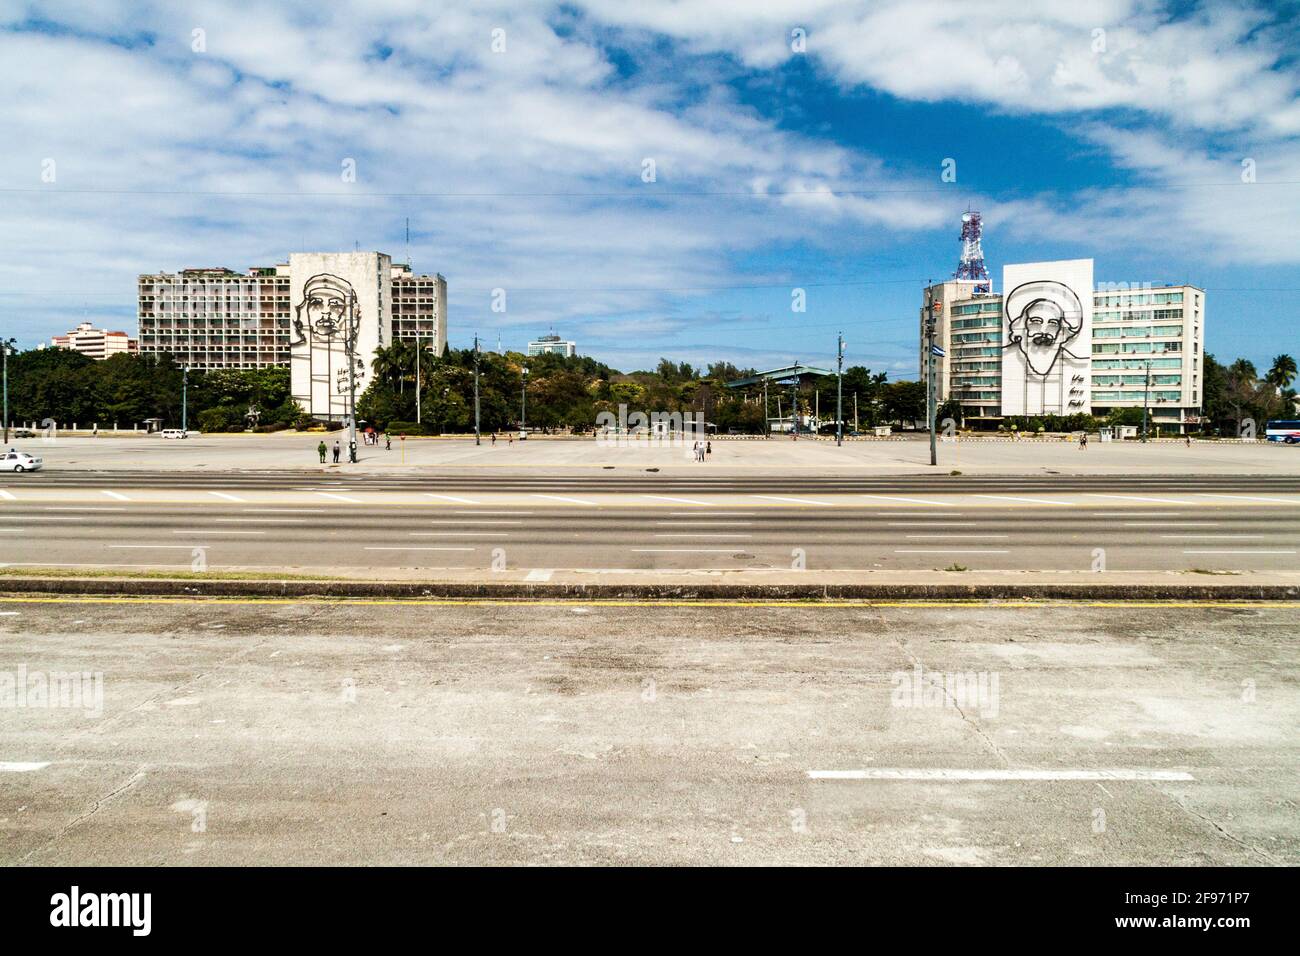 L'AVANA, CUBA - 21 FEBBRAIO 2016: Ritratto di che Guevara al Ministero dell'interno e Camilo Cienfuegos al Ministero dell'Informatica e della Comunica Foto Stock